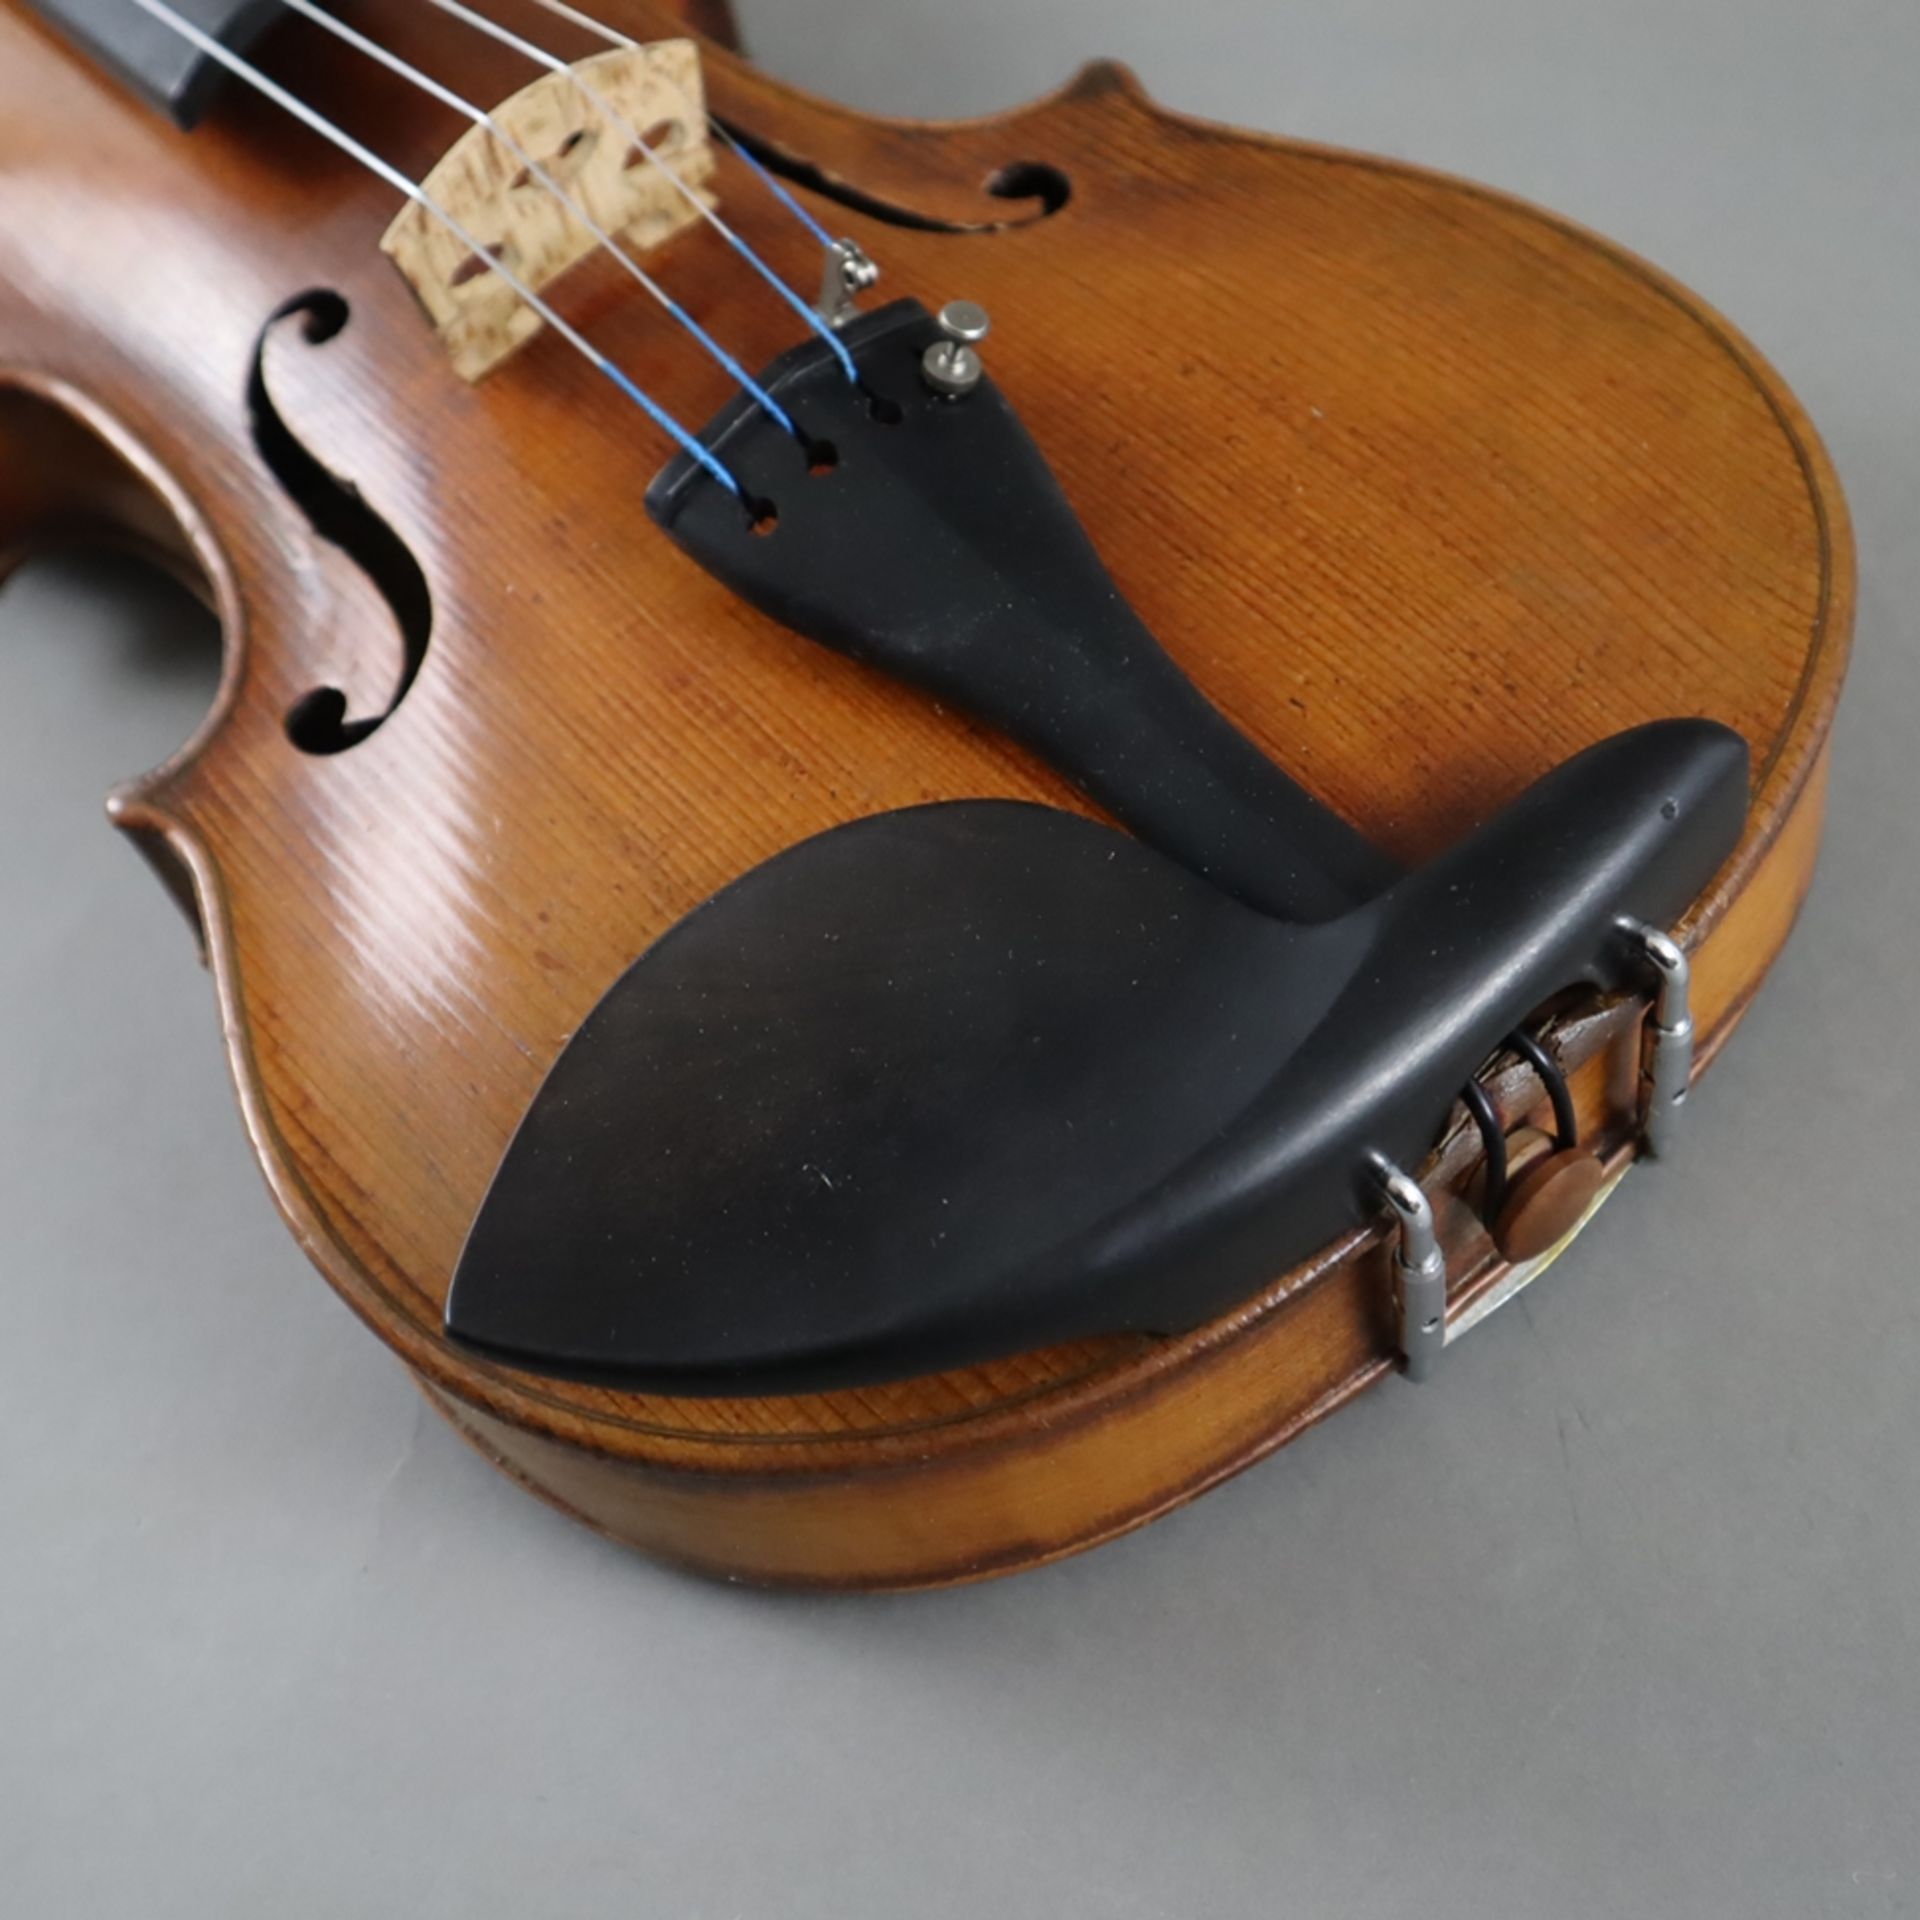 Schmale Geige - Italien, auf dem Faksimile-Etikett bezeichnet "Paolo Leonori / Roma 1949", einteili - Bild 4 aus 8